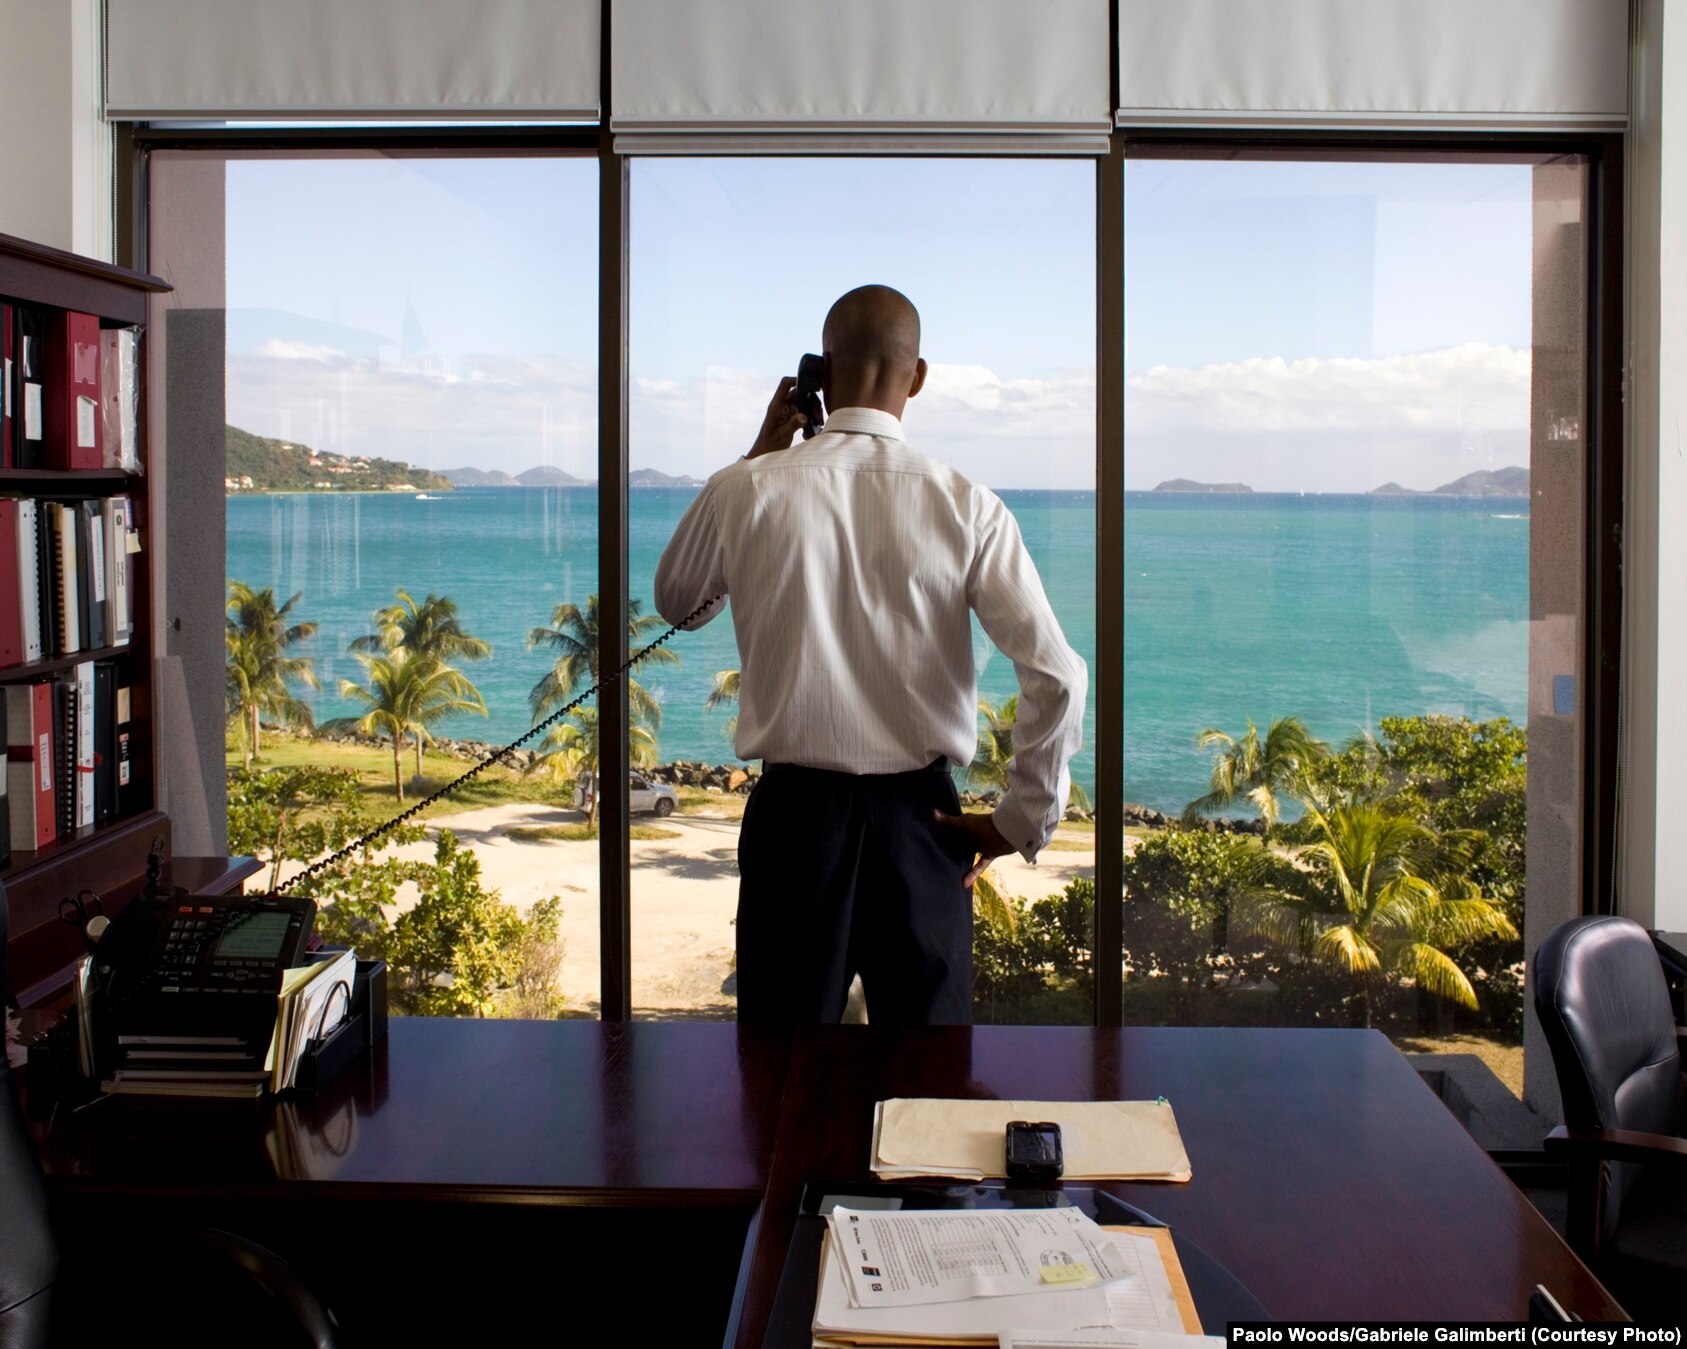 Neil M. Smith, sekretar për financa në Ishujt britanik Virxhine, i fotografuar në zyrën e tij në Tortola. Në Ishujt britanik Virxhine janë të regjistruara 800.000 kompani.